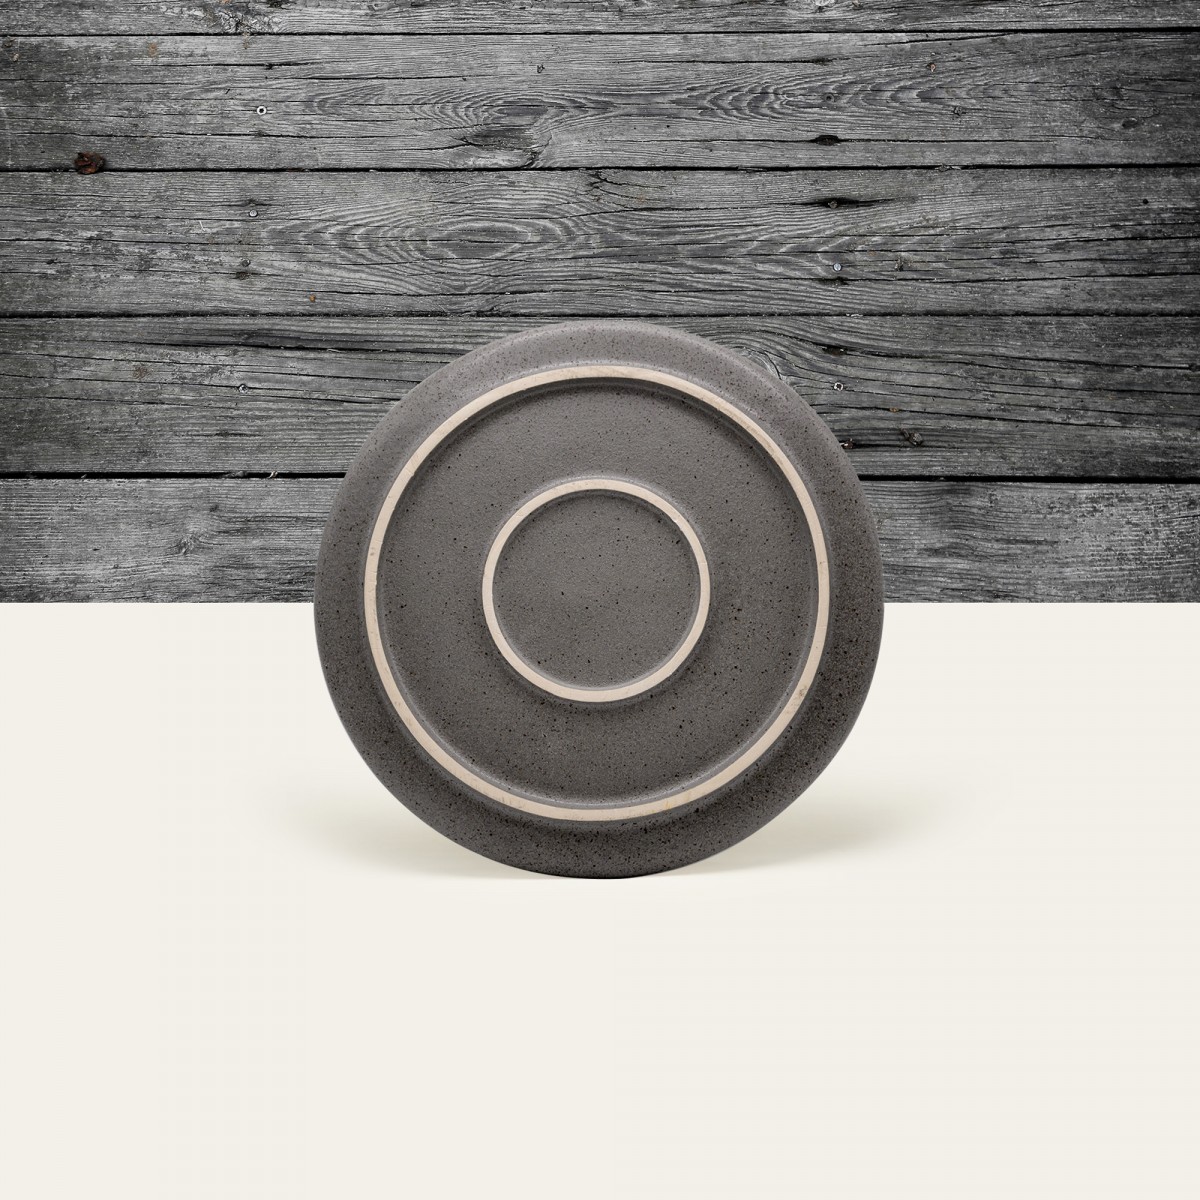 Handgemachter Steingut Teller Ddoria klein - Granit Grau - EDDA stoneware
